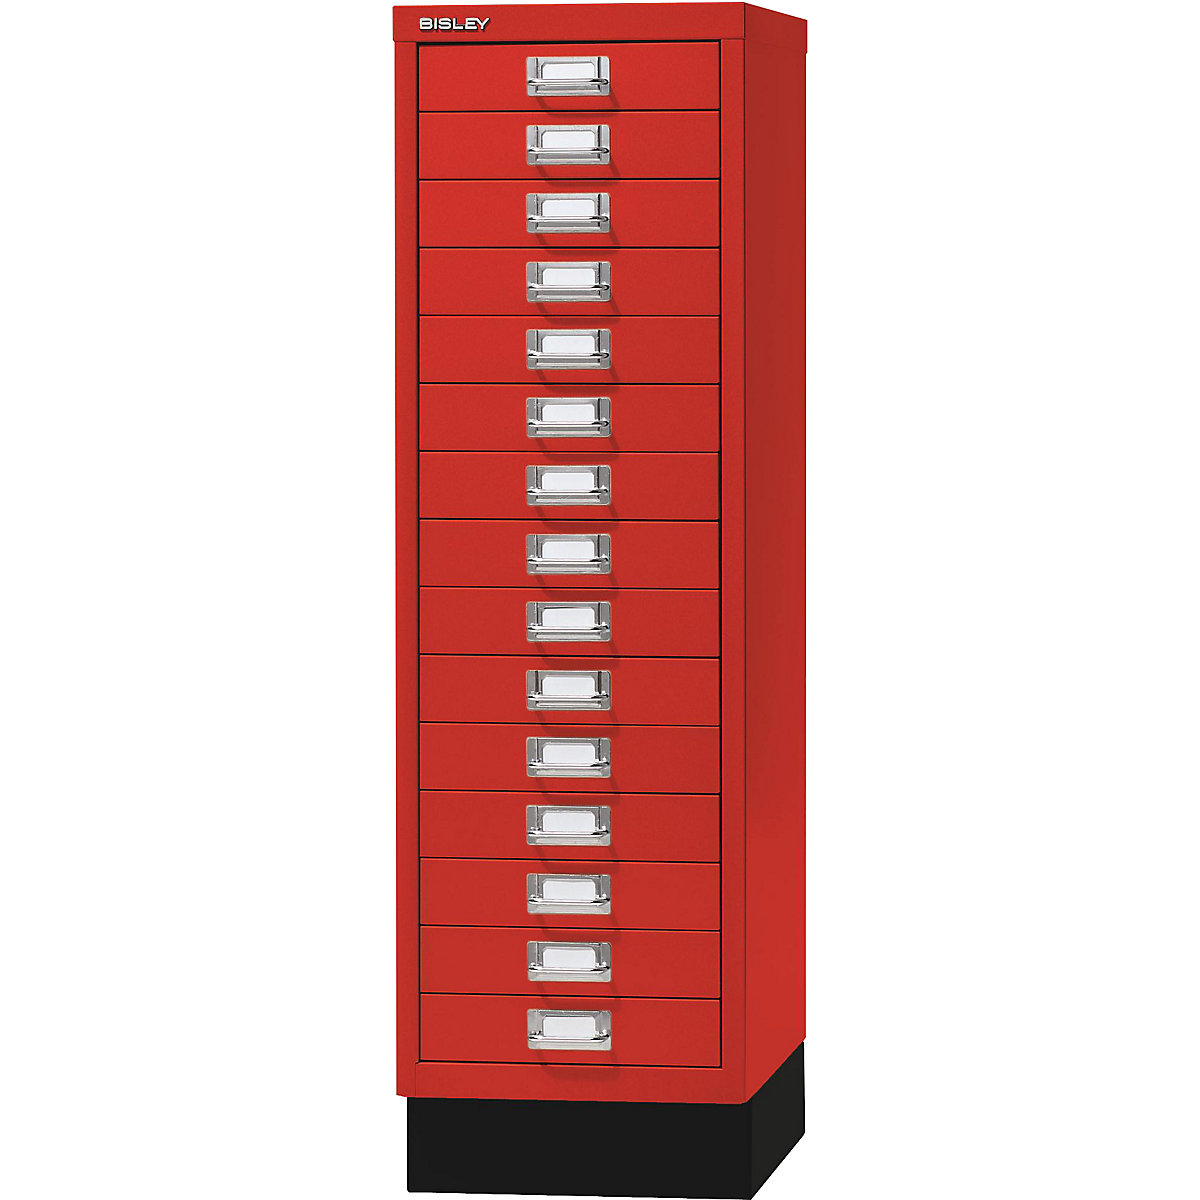 Predalnik MultiDrawer™, serija 39 – BISLEY, s podnožjem, DIN A4, 15 predalov, kardinalsko rdeče, črne barve-2